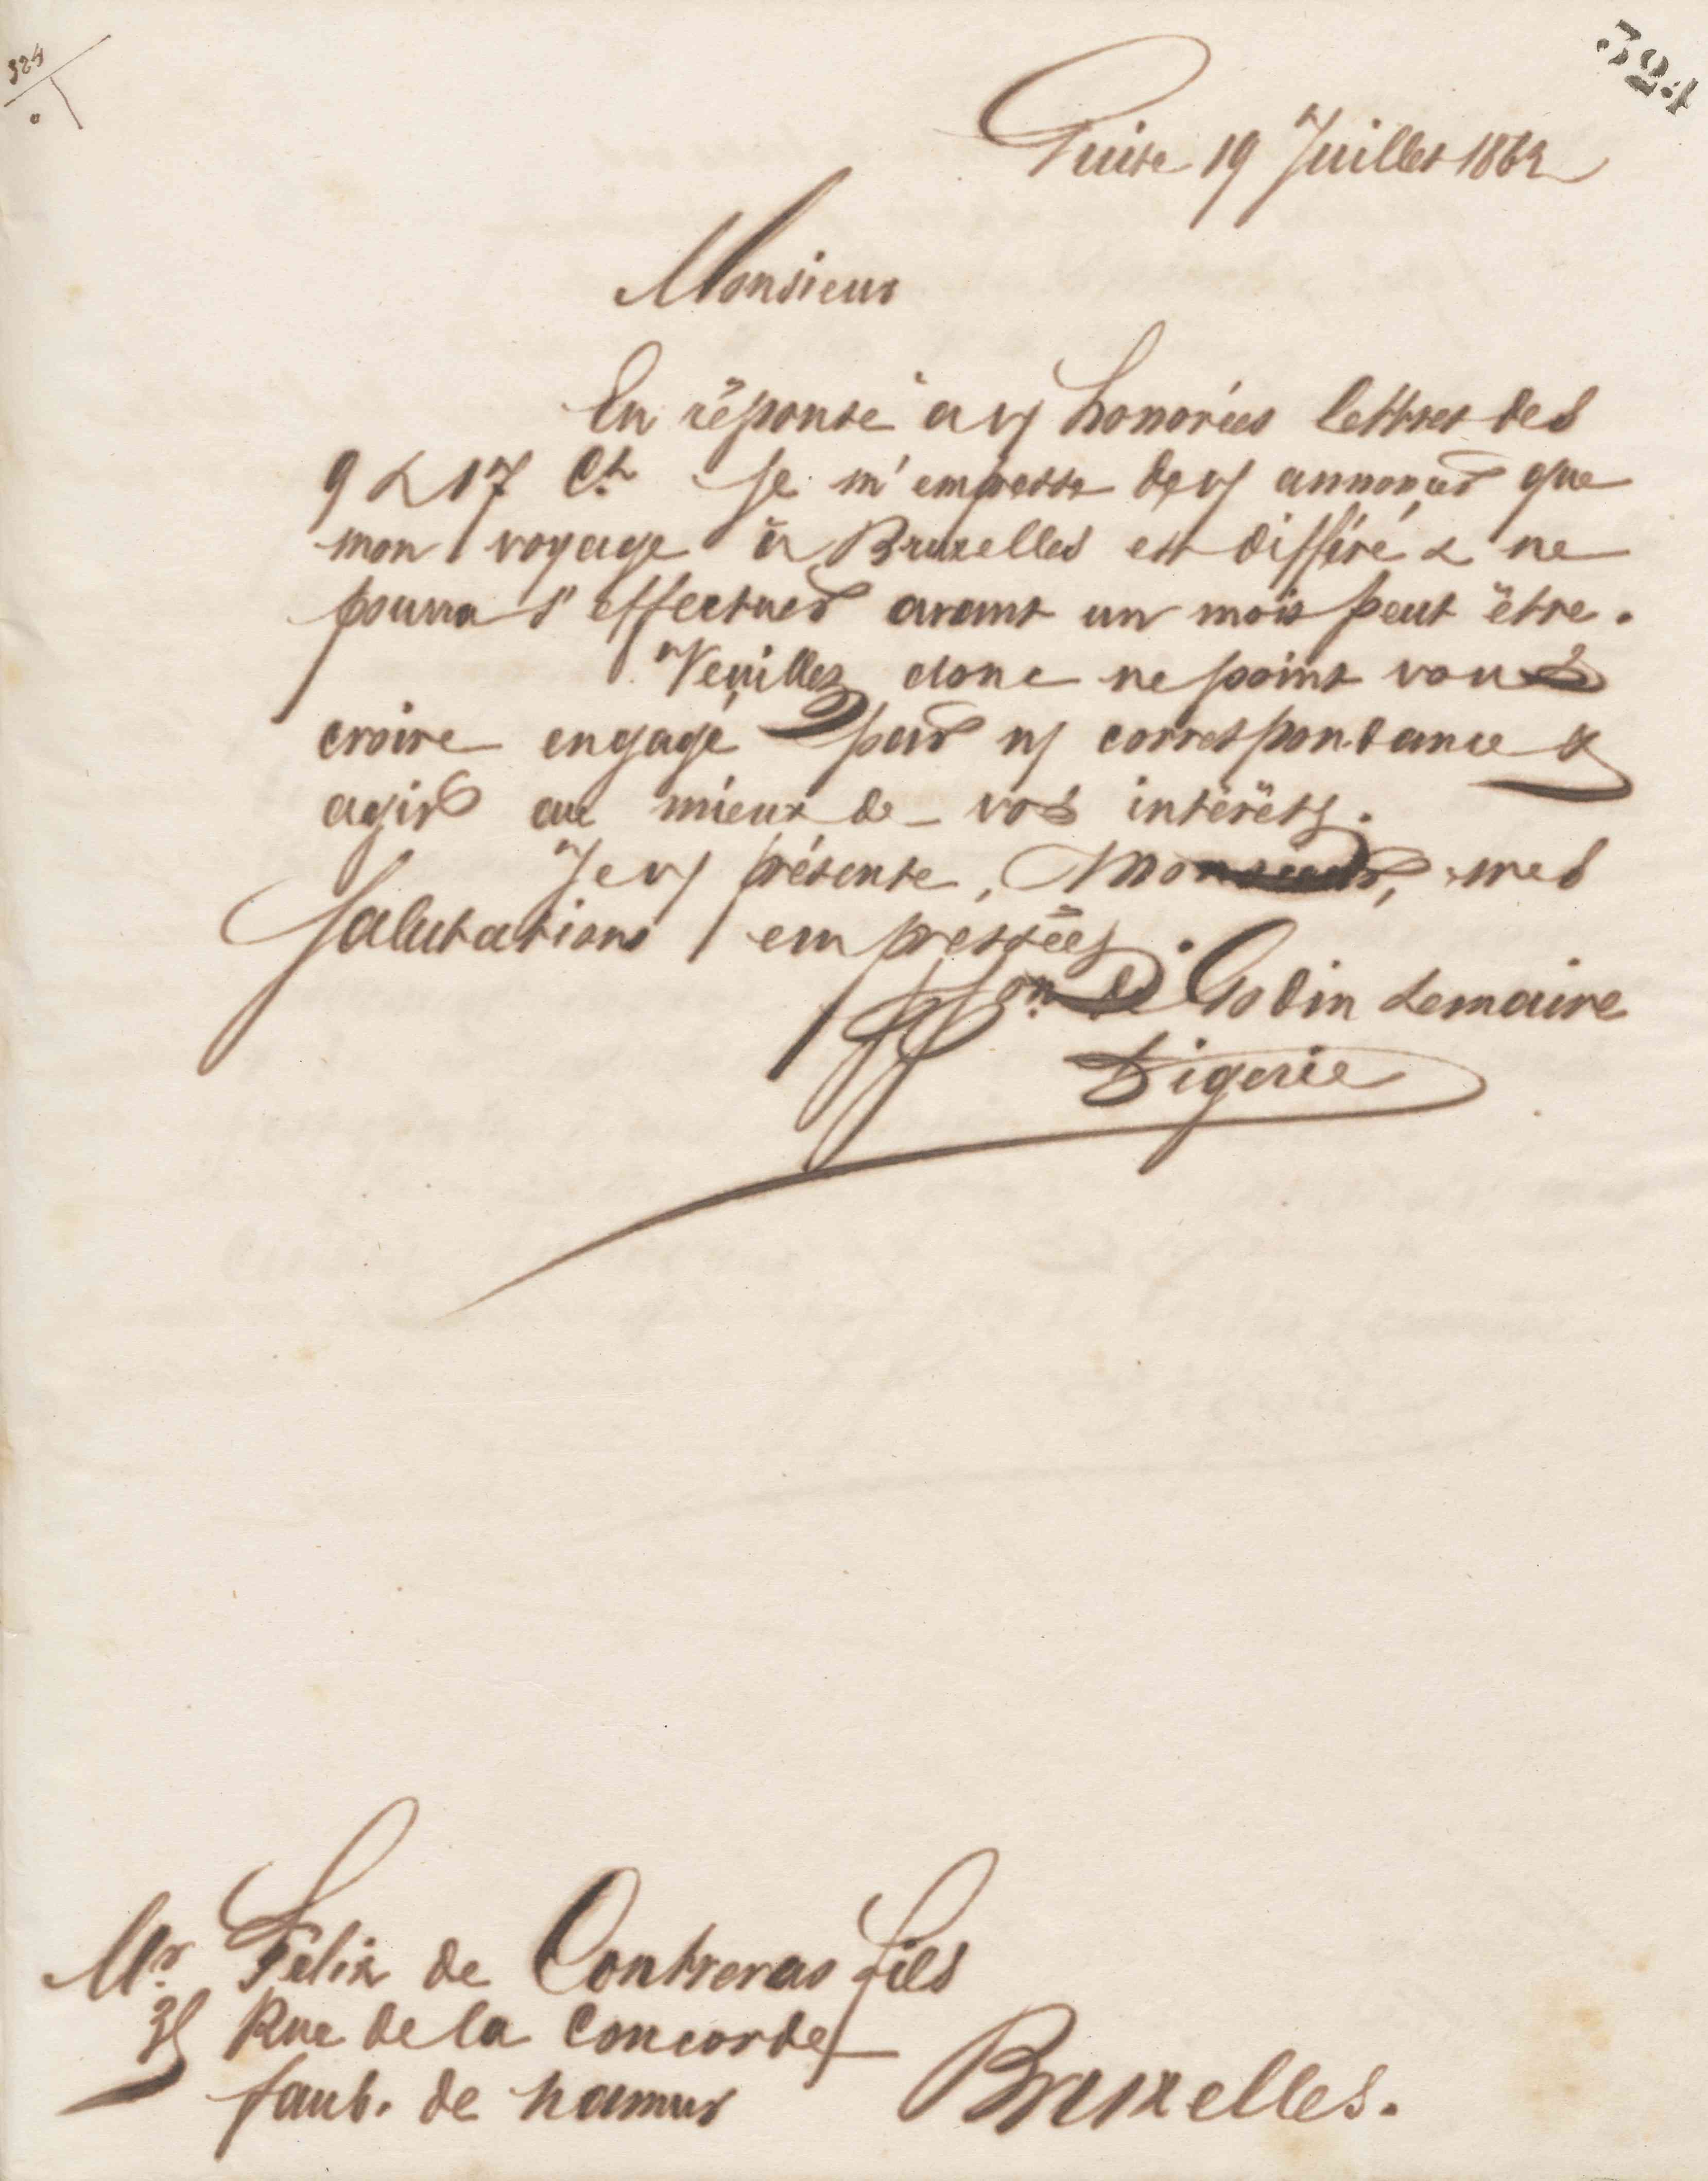 Jean-Baptiste André Godin à Félix de Contreras, 19 juillet 1862